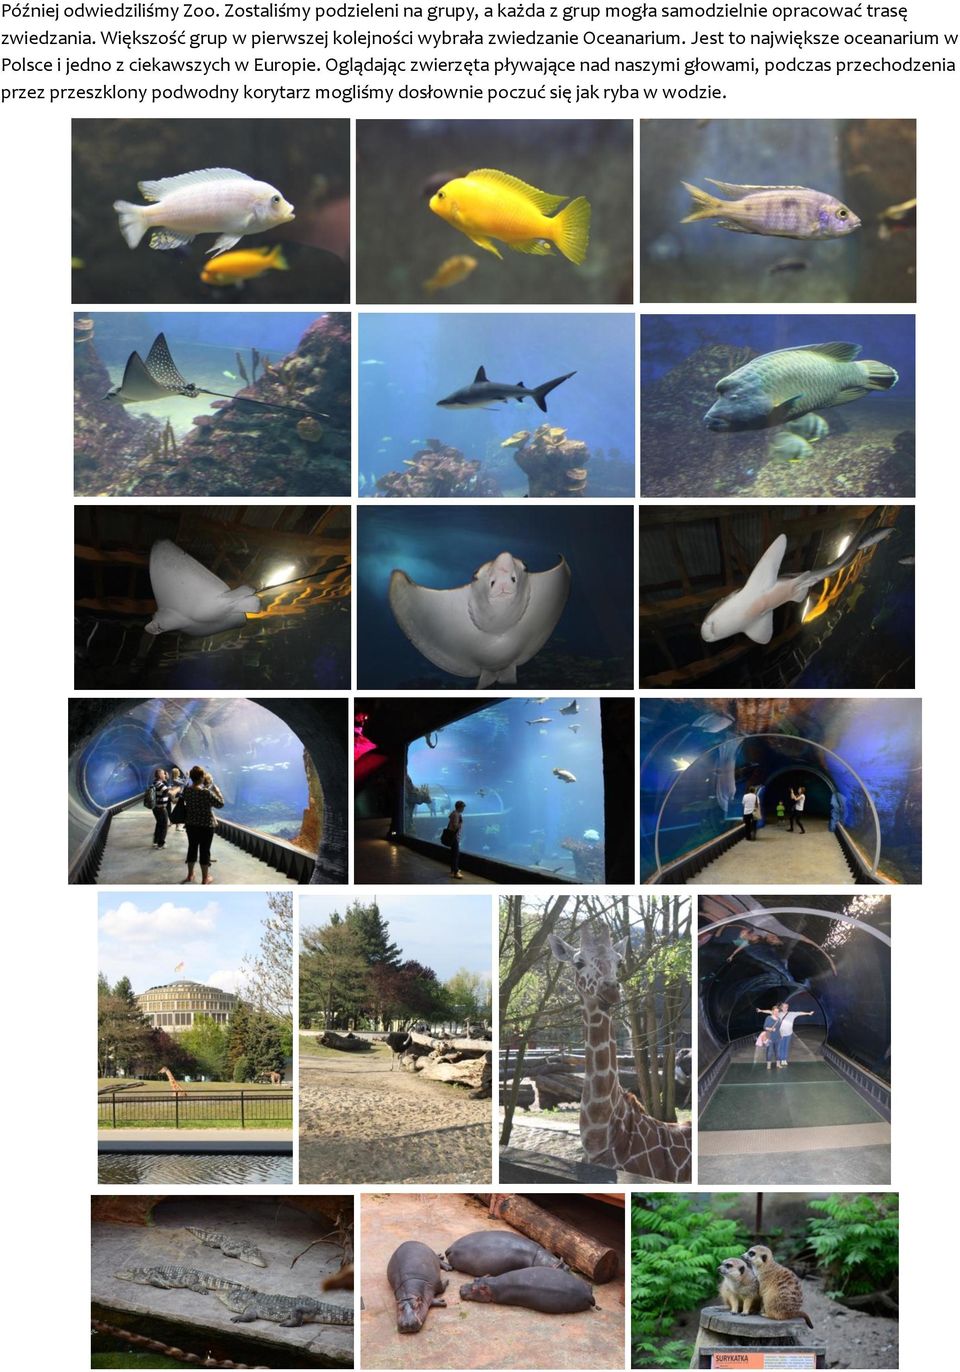 Większość grup w pierwszej kolejności wybrała zwiedzanie Oceanarium.